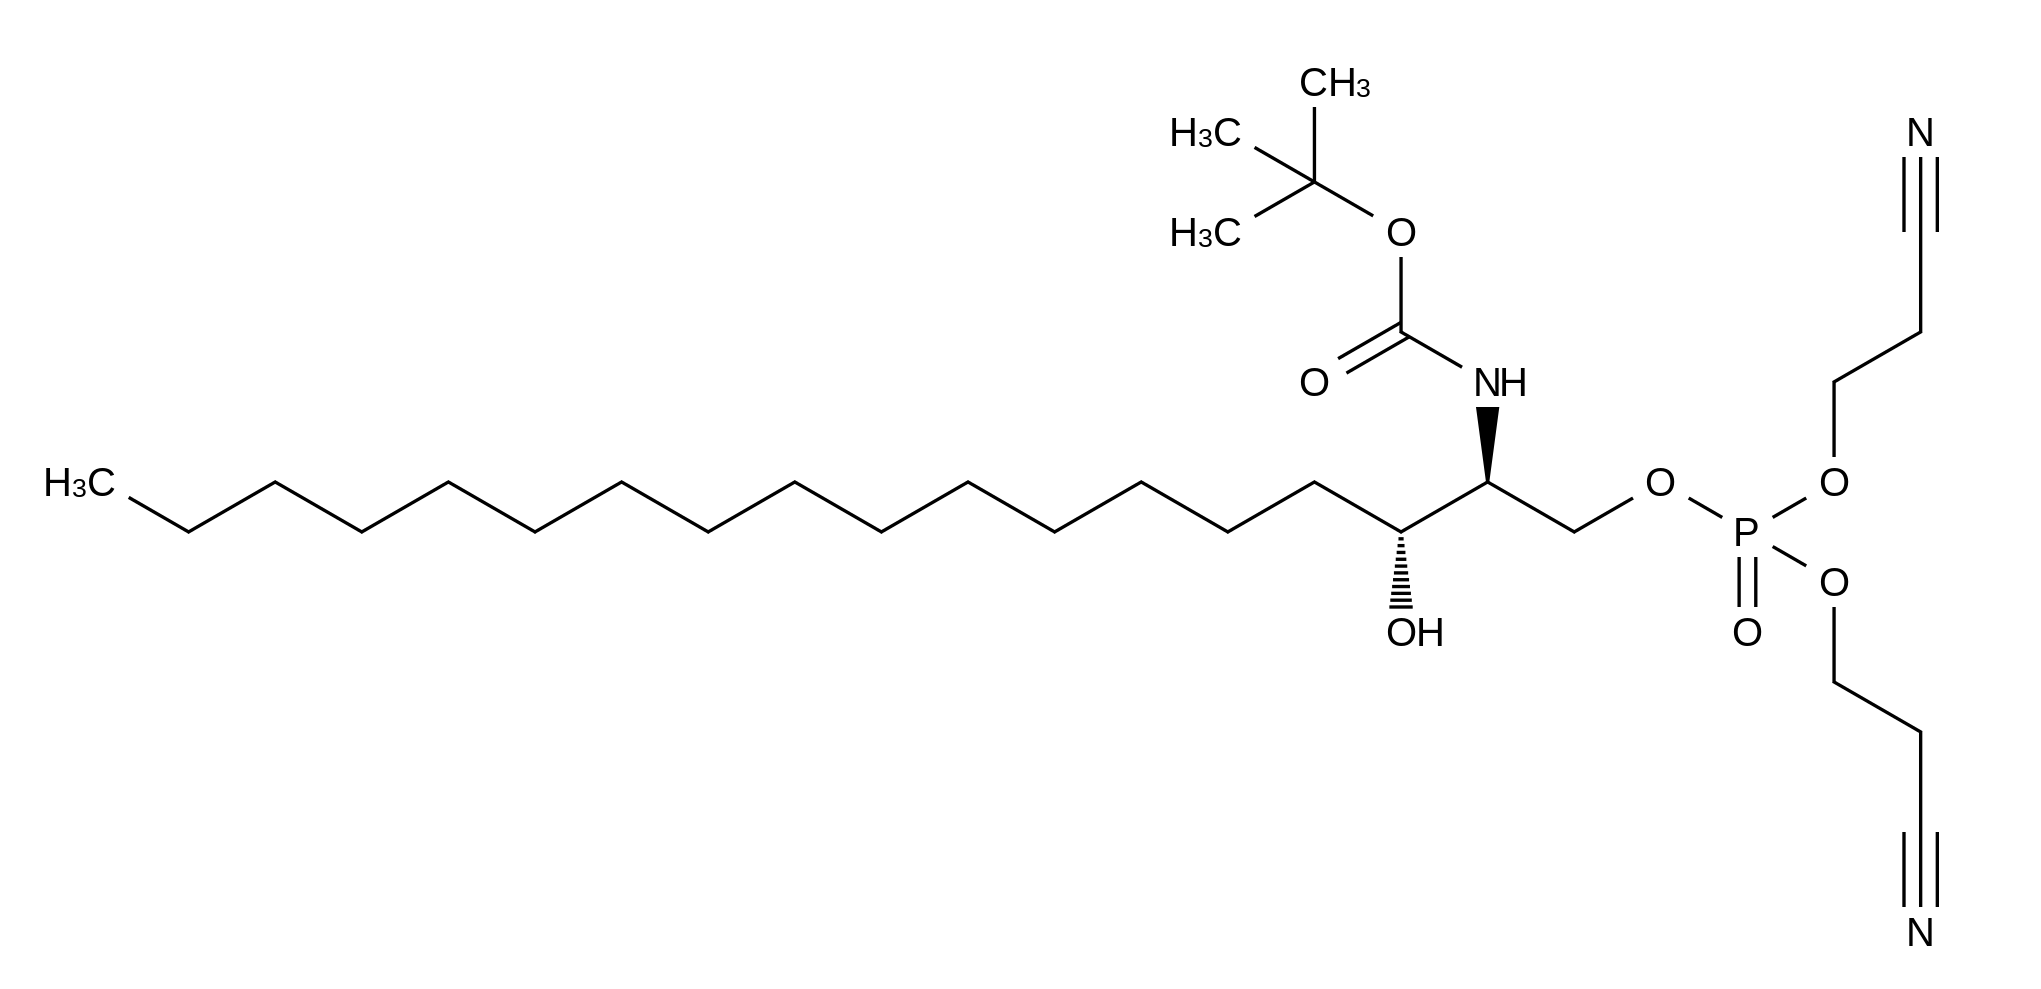 N-tert-Butyloxycarbonyl-D-erythro-dihydro-D-sphingosine-1-phosphate Dicyanoethyl Ester